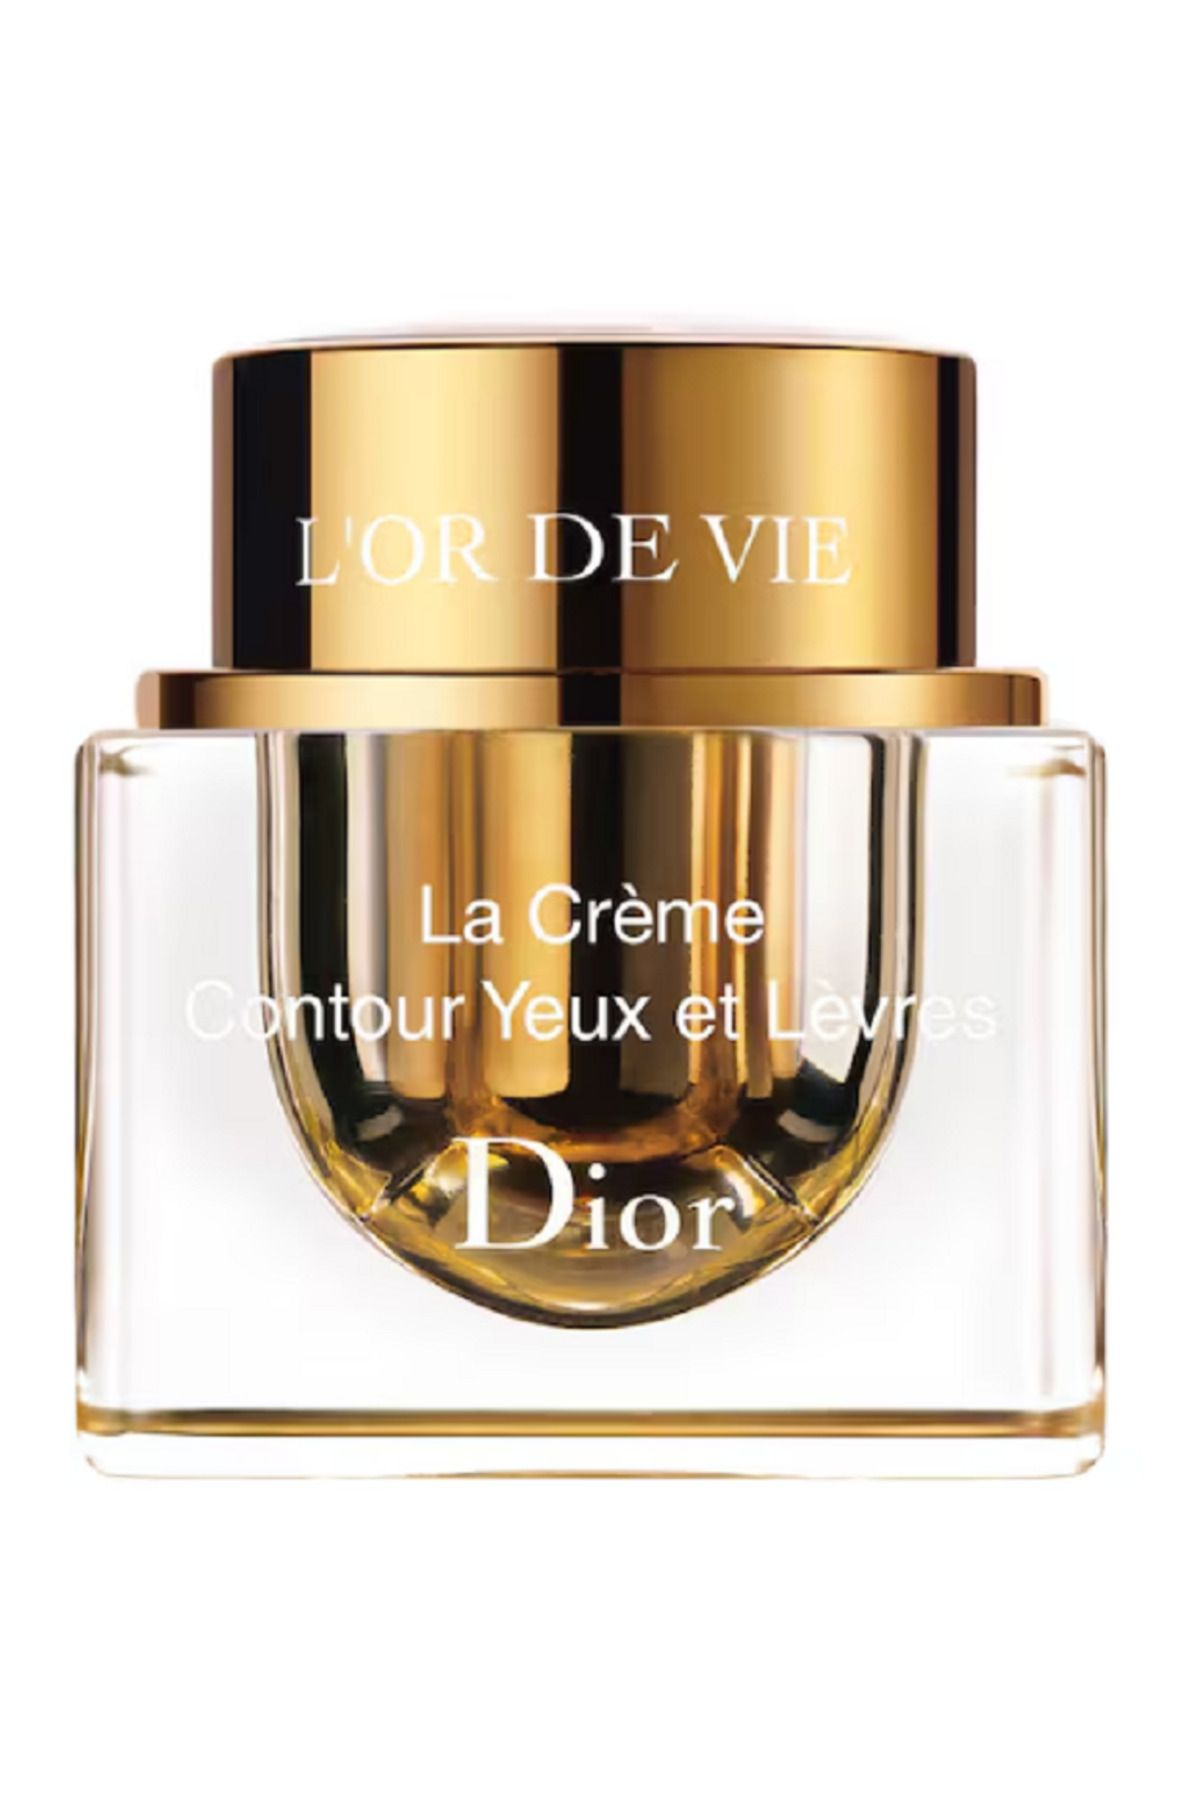 Dior L'Or de Vie - İnanılmaz Derecede İnce Ve Eriyen Göz Ve Dudak Çevresi Kremi 15ml